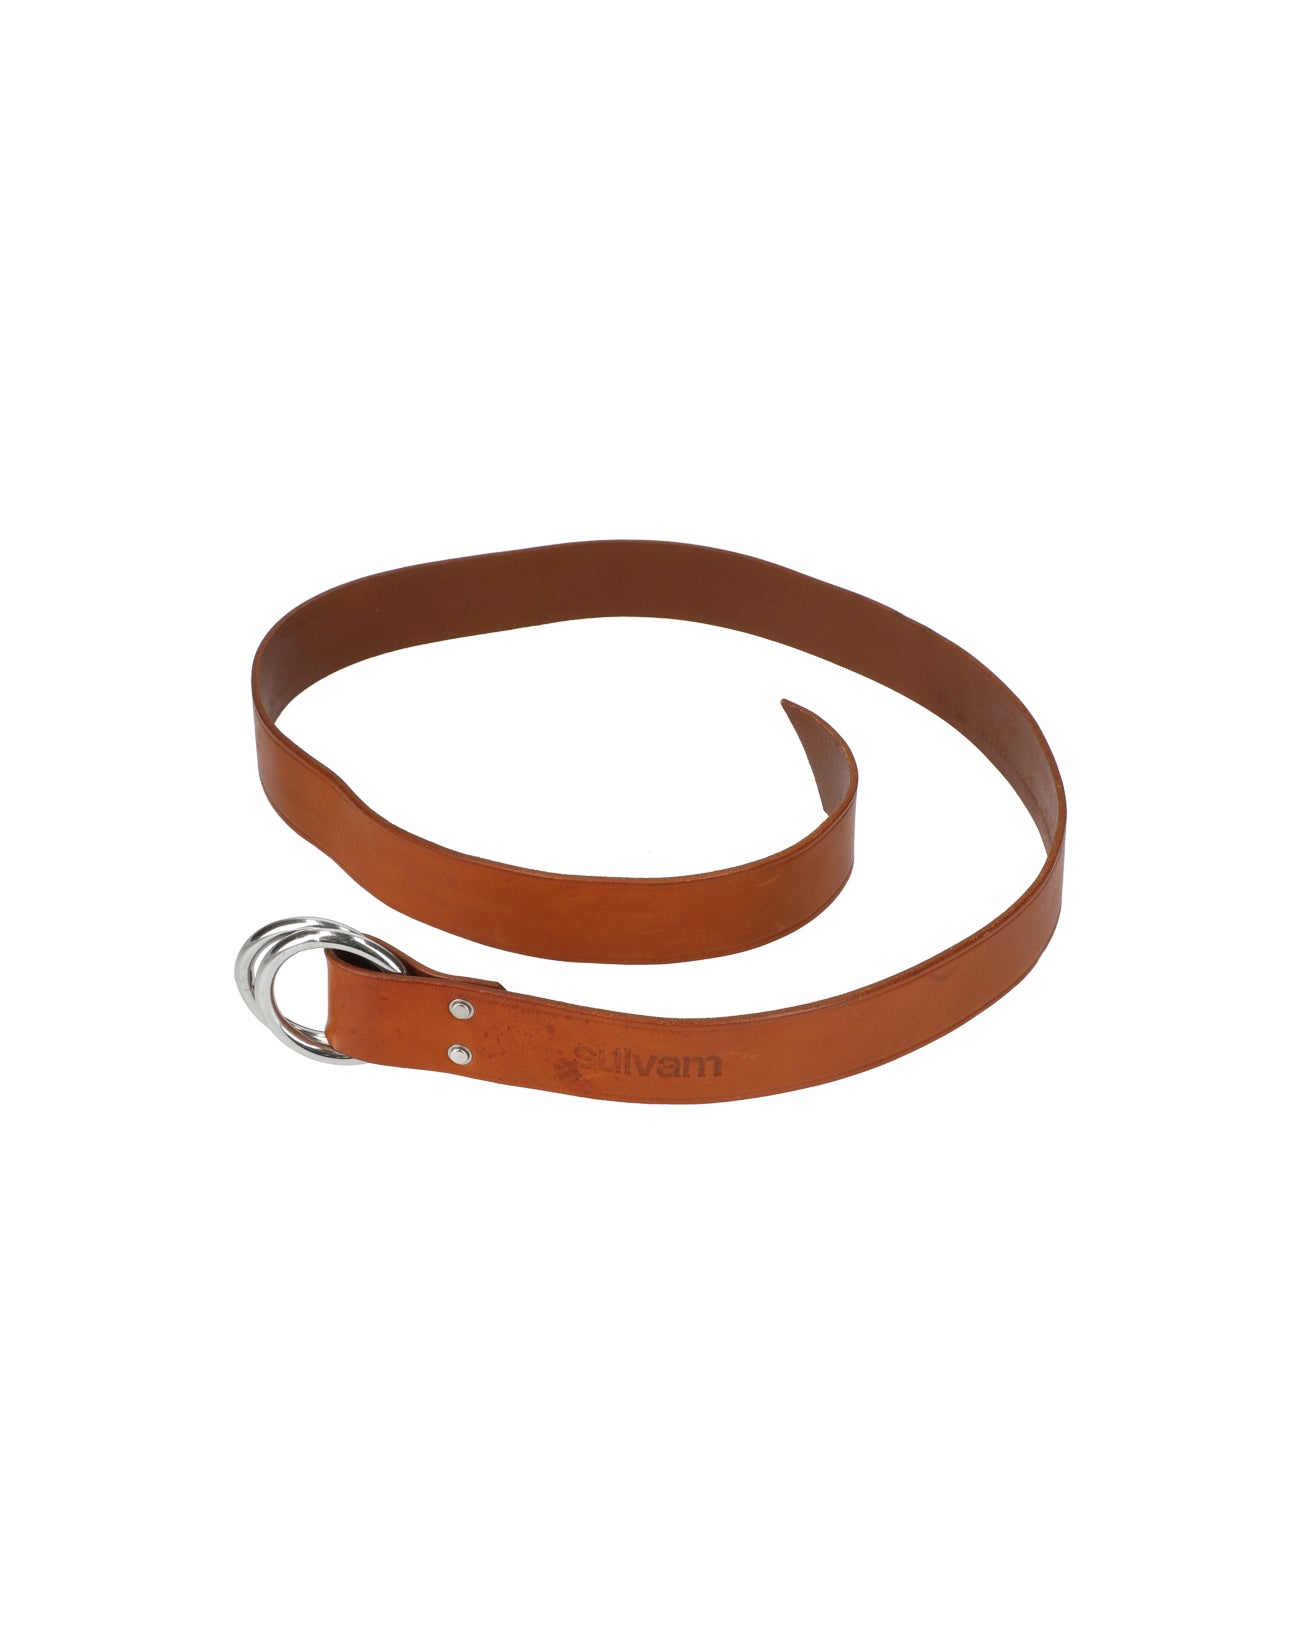 Ring belt - brown